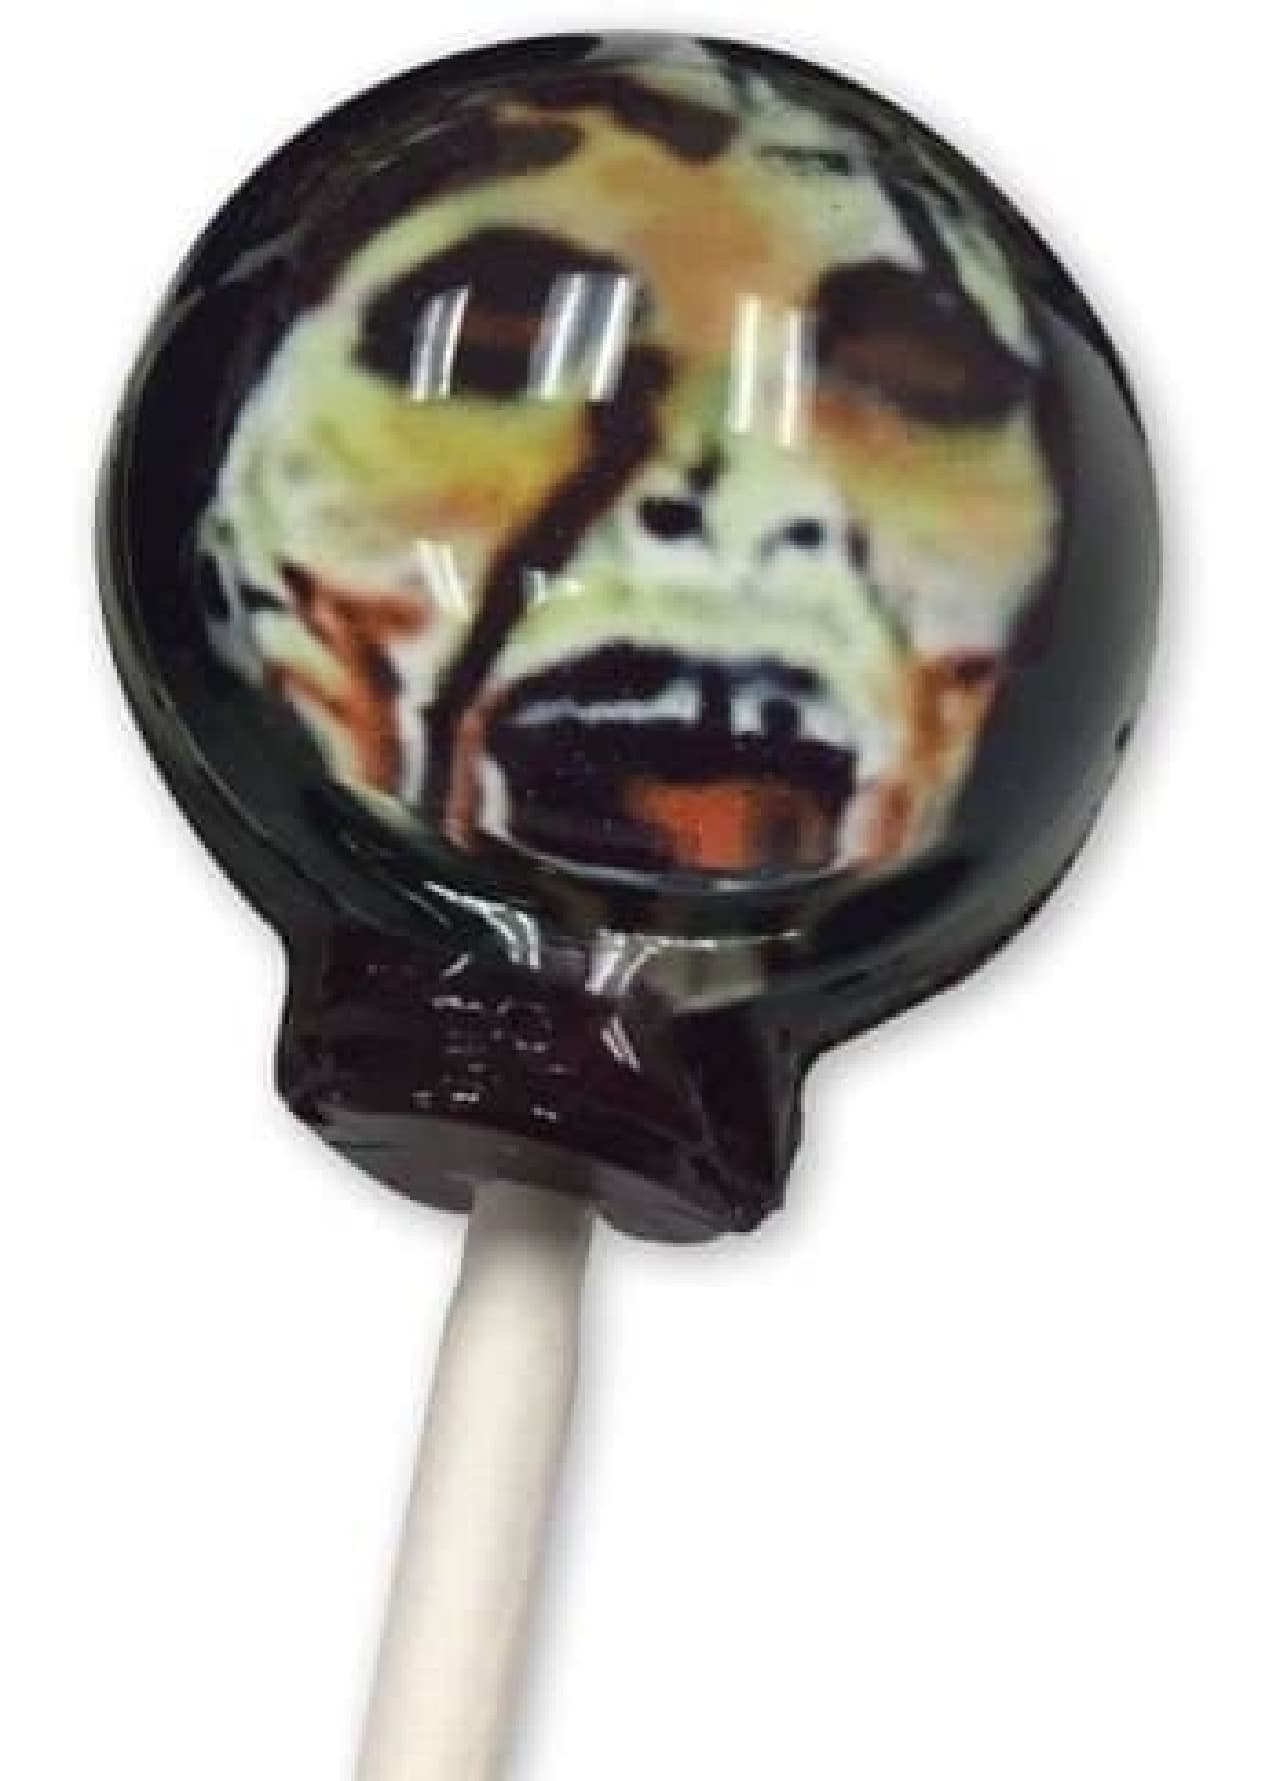 Village Vanguard Online "Zombie Lollipop"